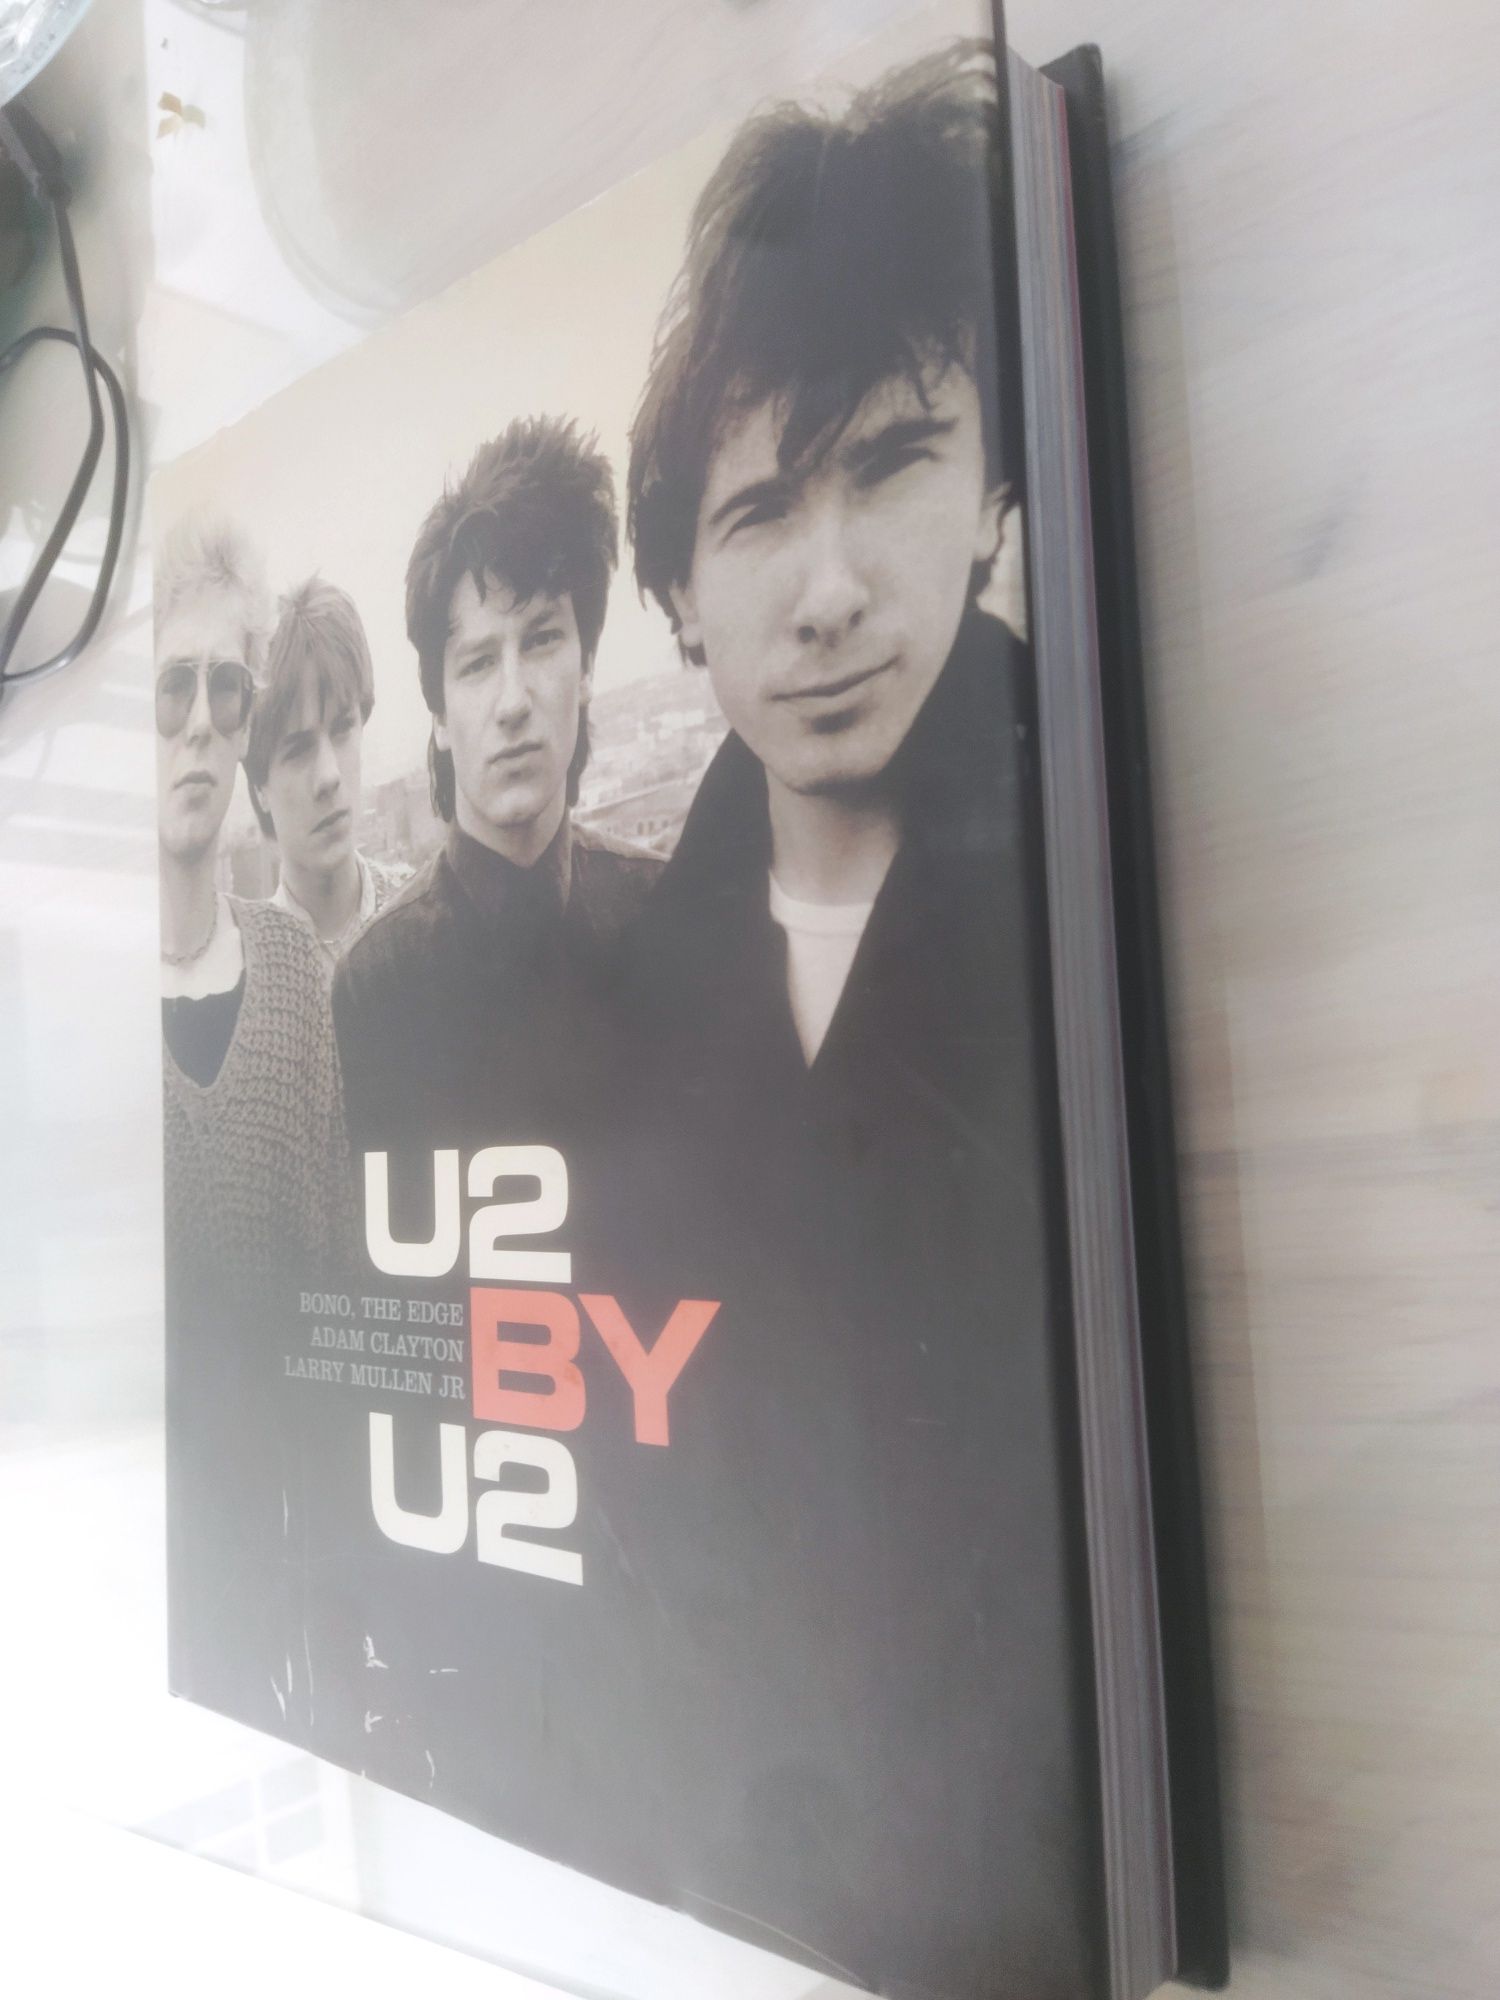 "U2 BY U2" Biografia